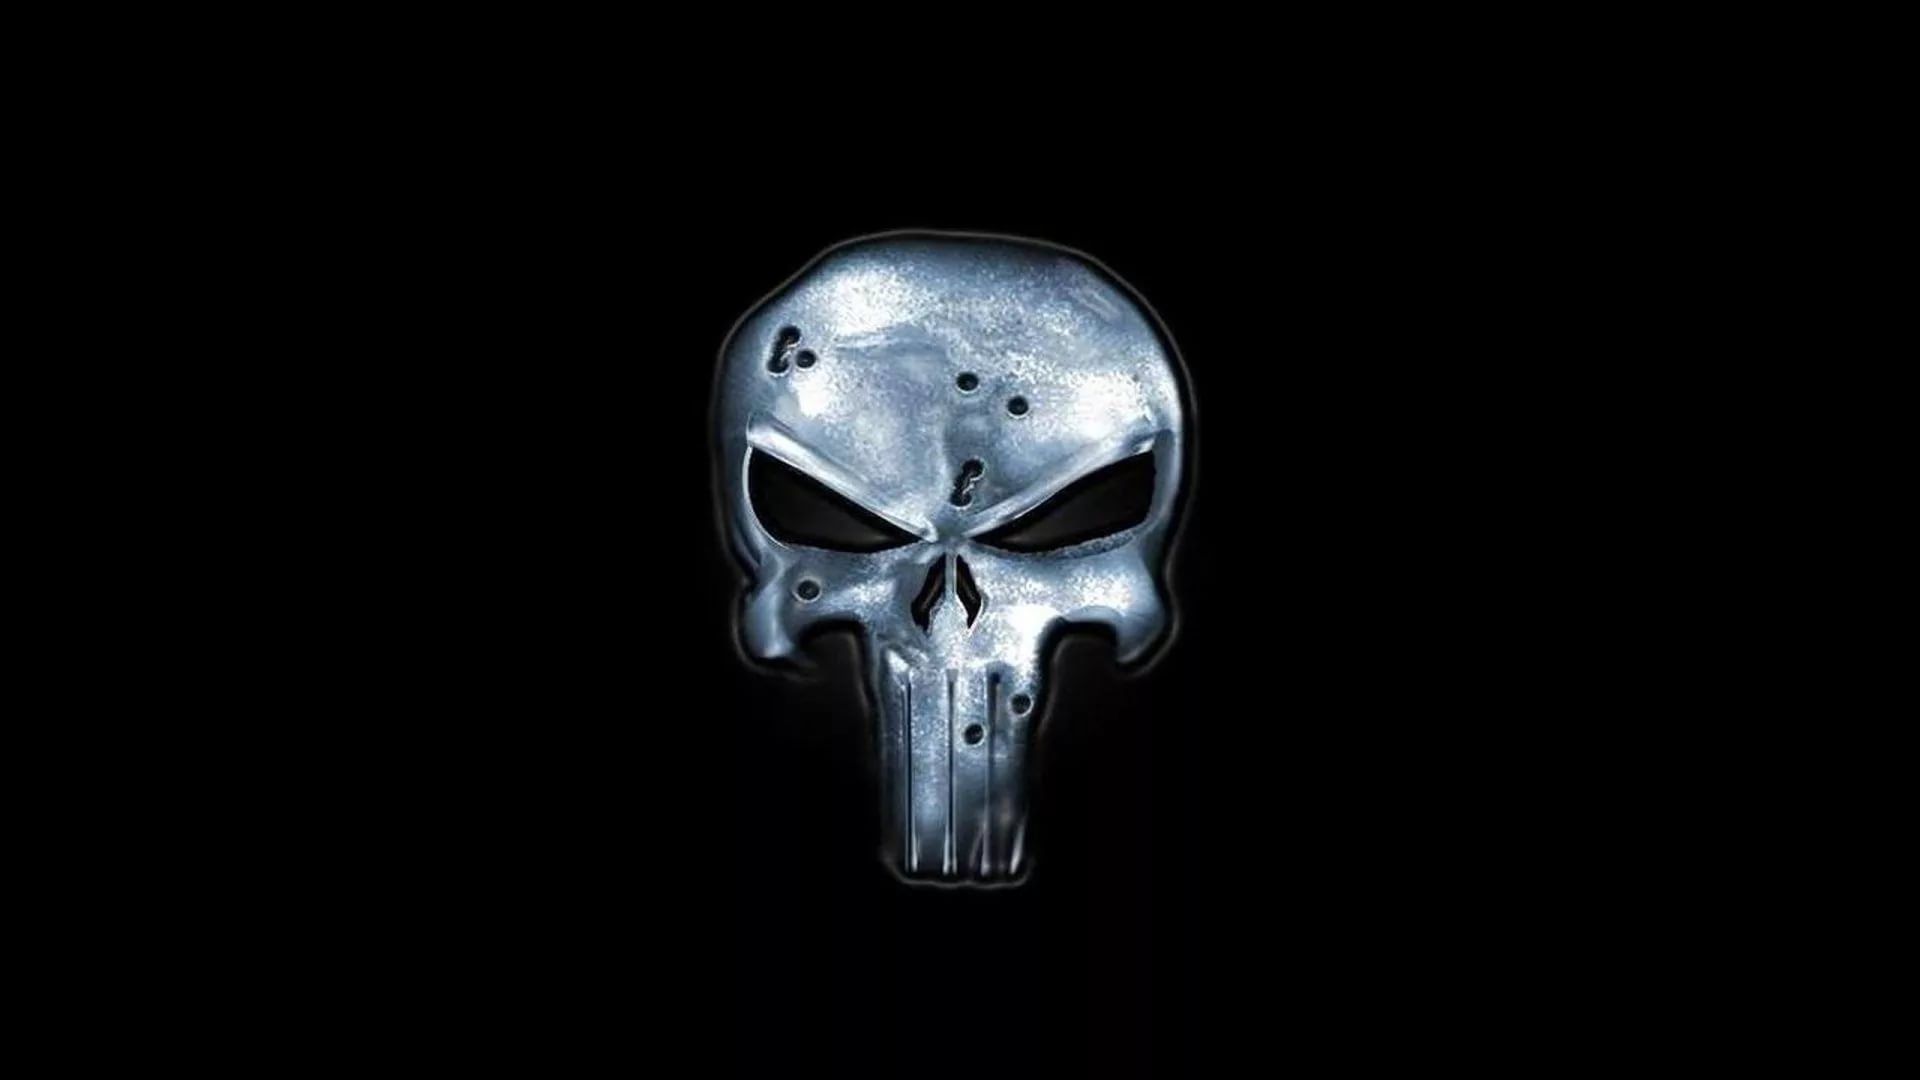 Punisher Skull hd wallpaper 1080p for pc